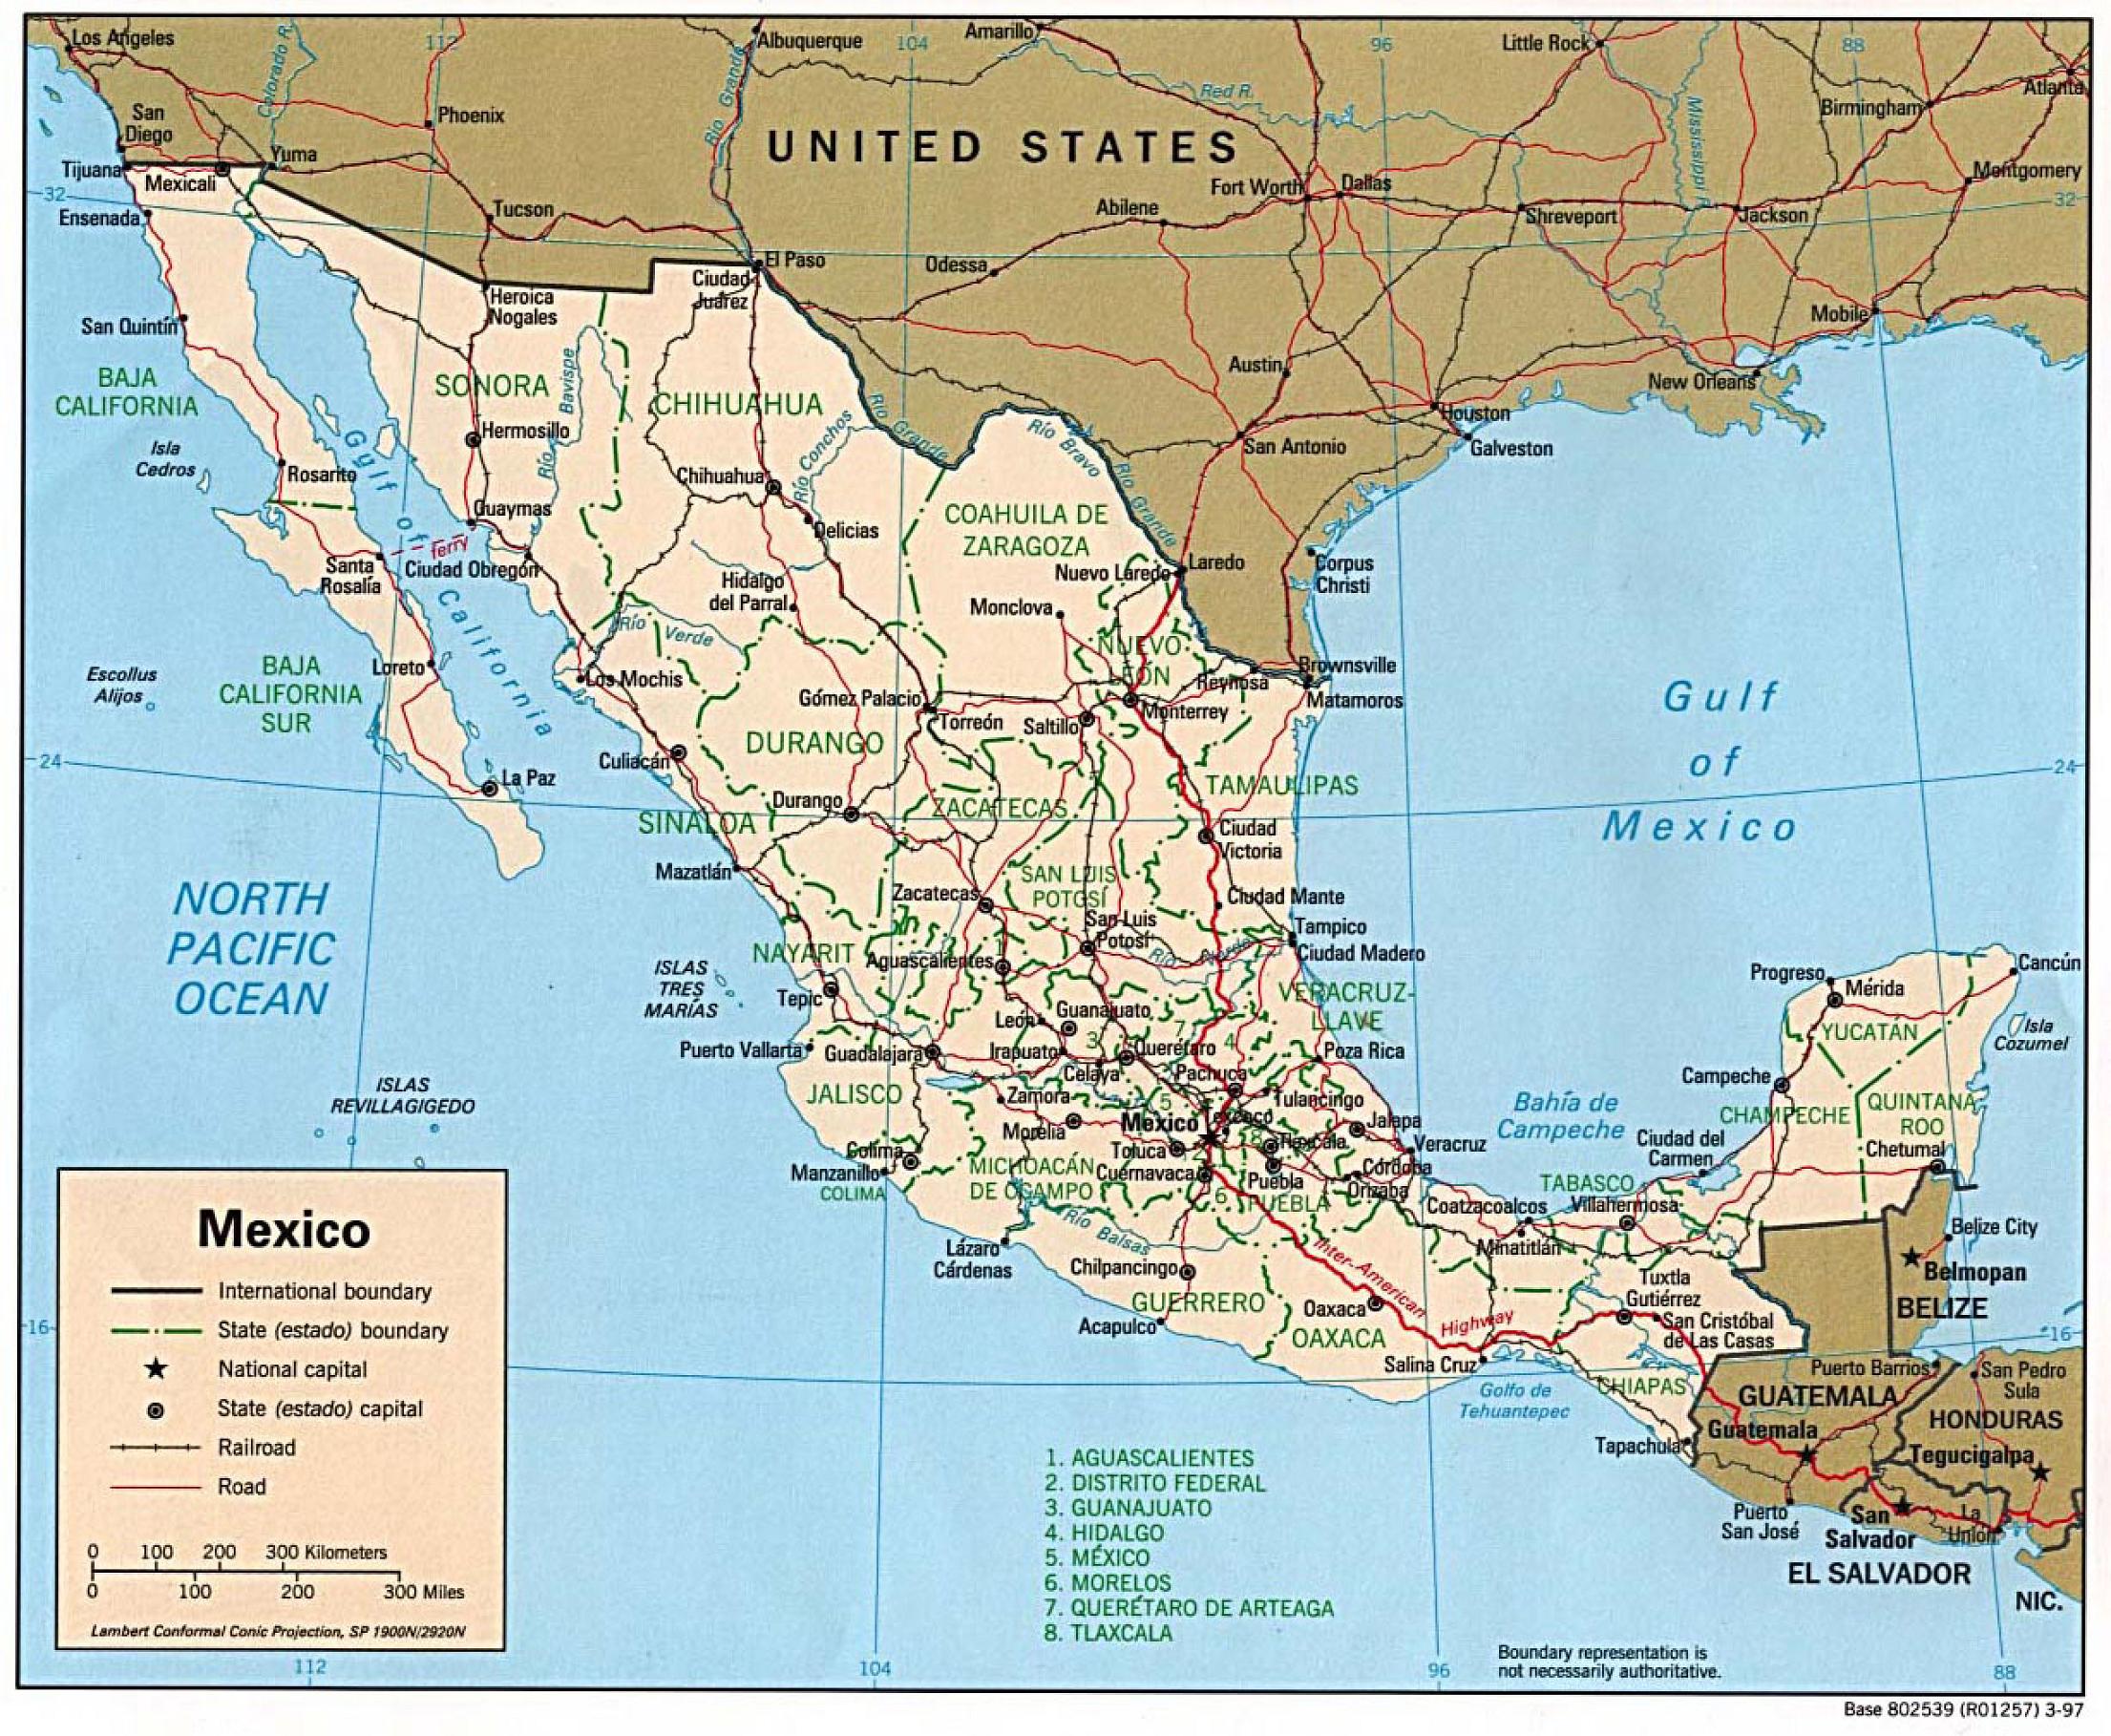 Mapa Político de México 1997 - Tamaño completo